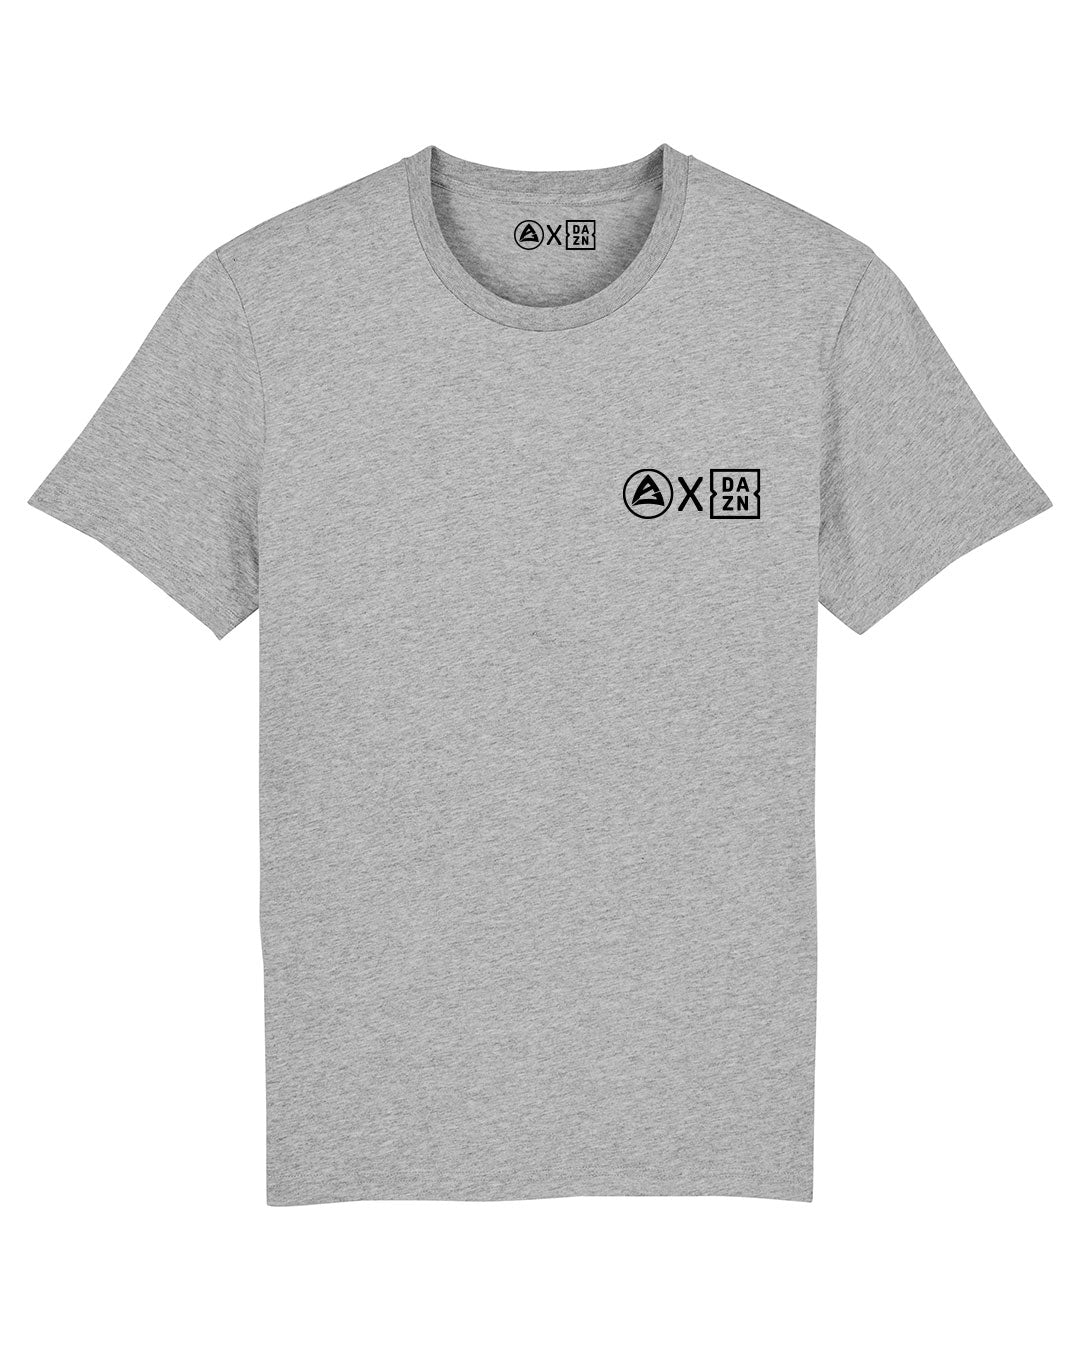 AJ x DAZN T-Shirt - Grey